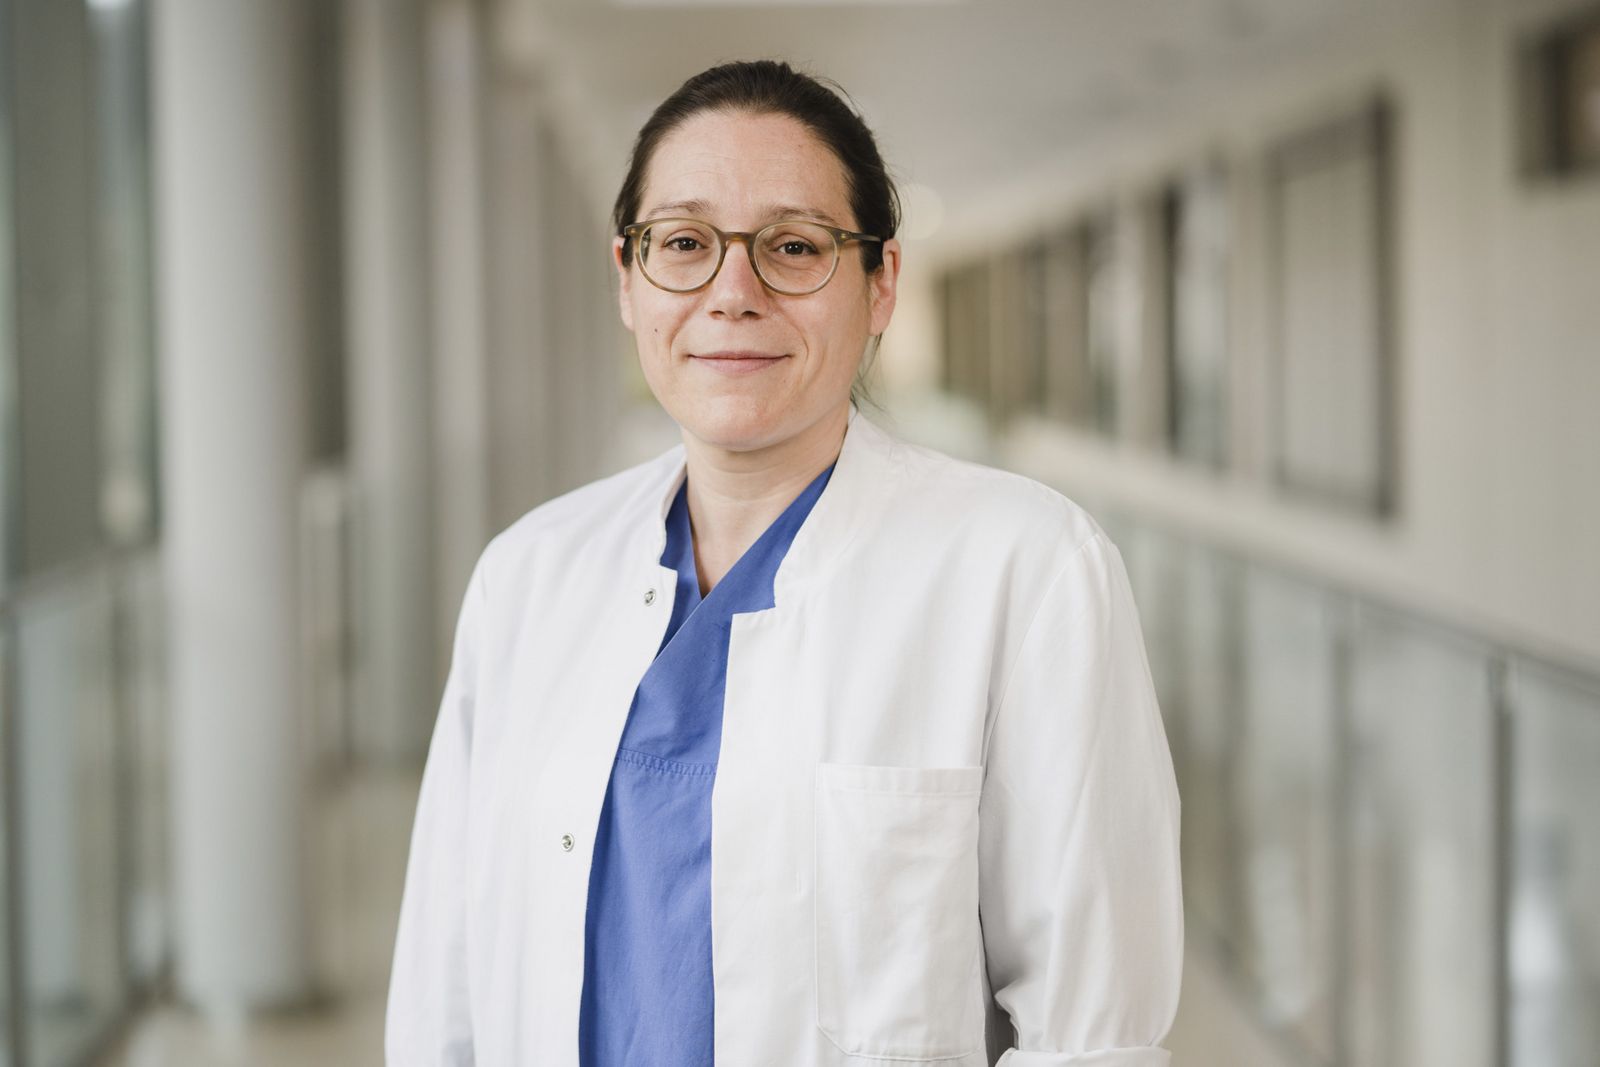 Susana Tomàs Marocco, Ärztin in Weiterbildung